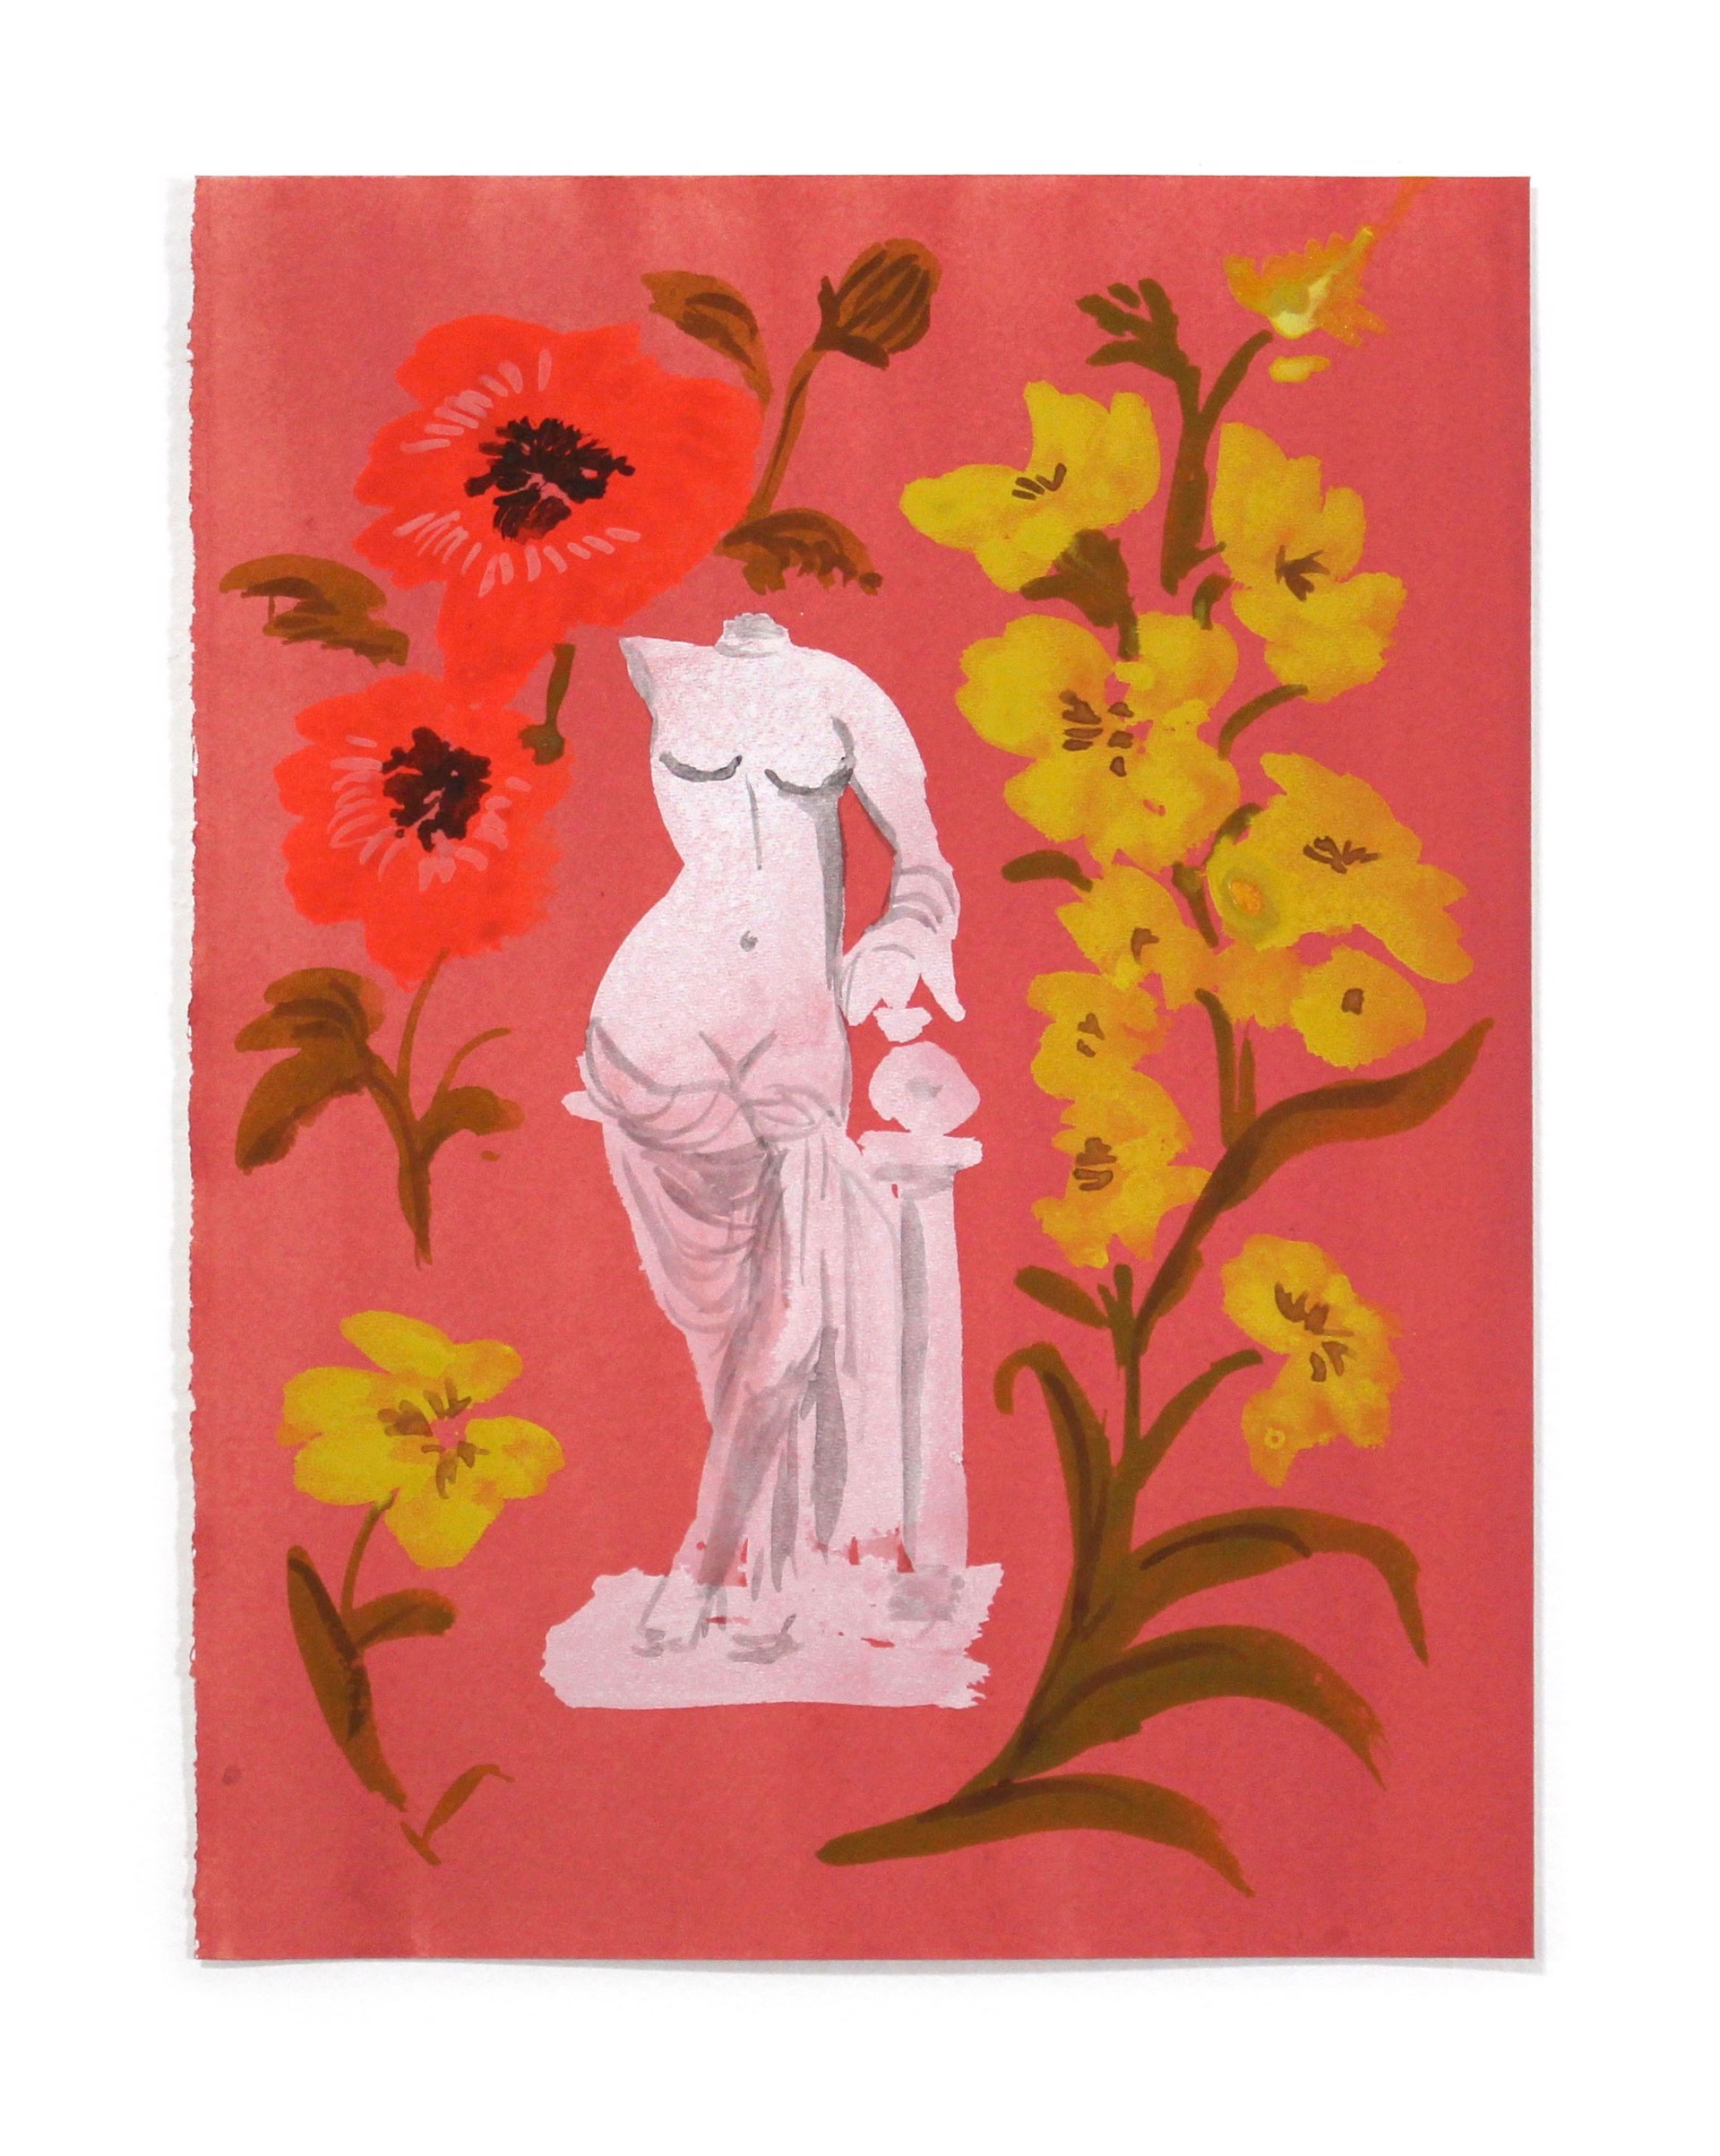 Women and Flowers II by Kayla Plosz Antiel